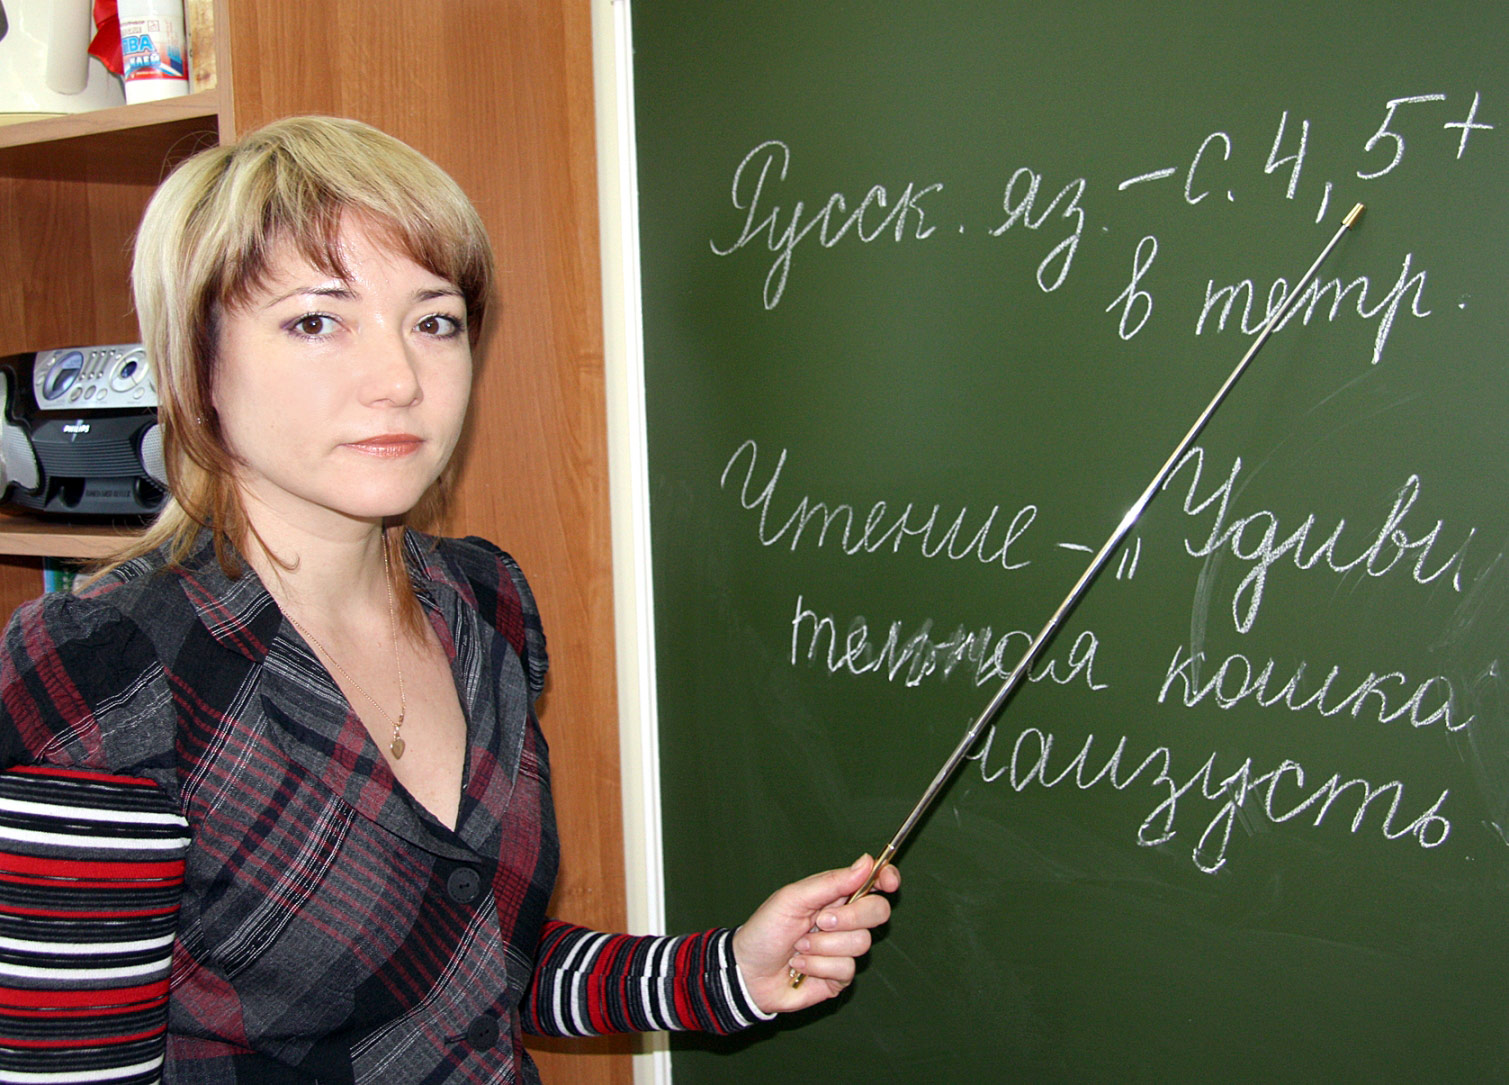 фото русском учитель